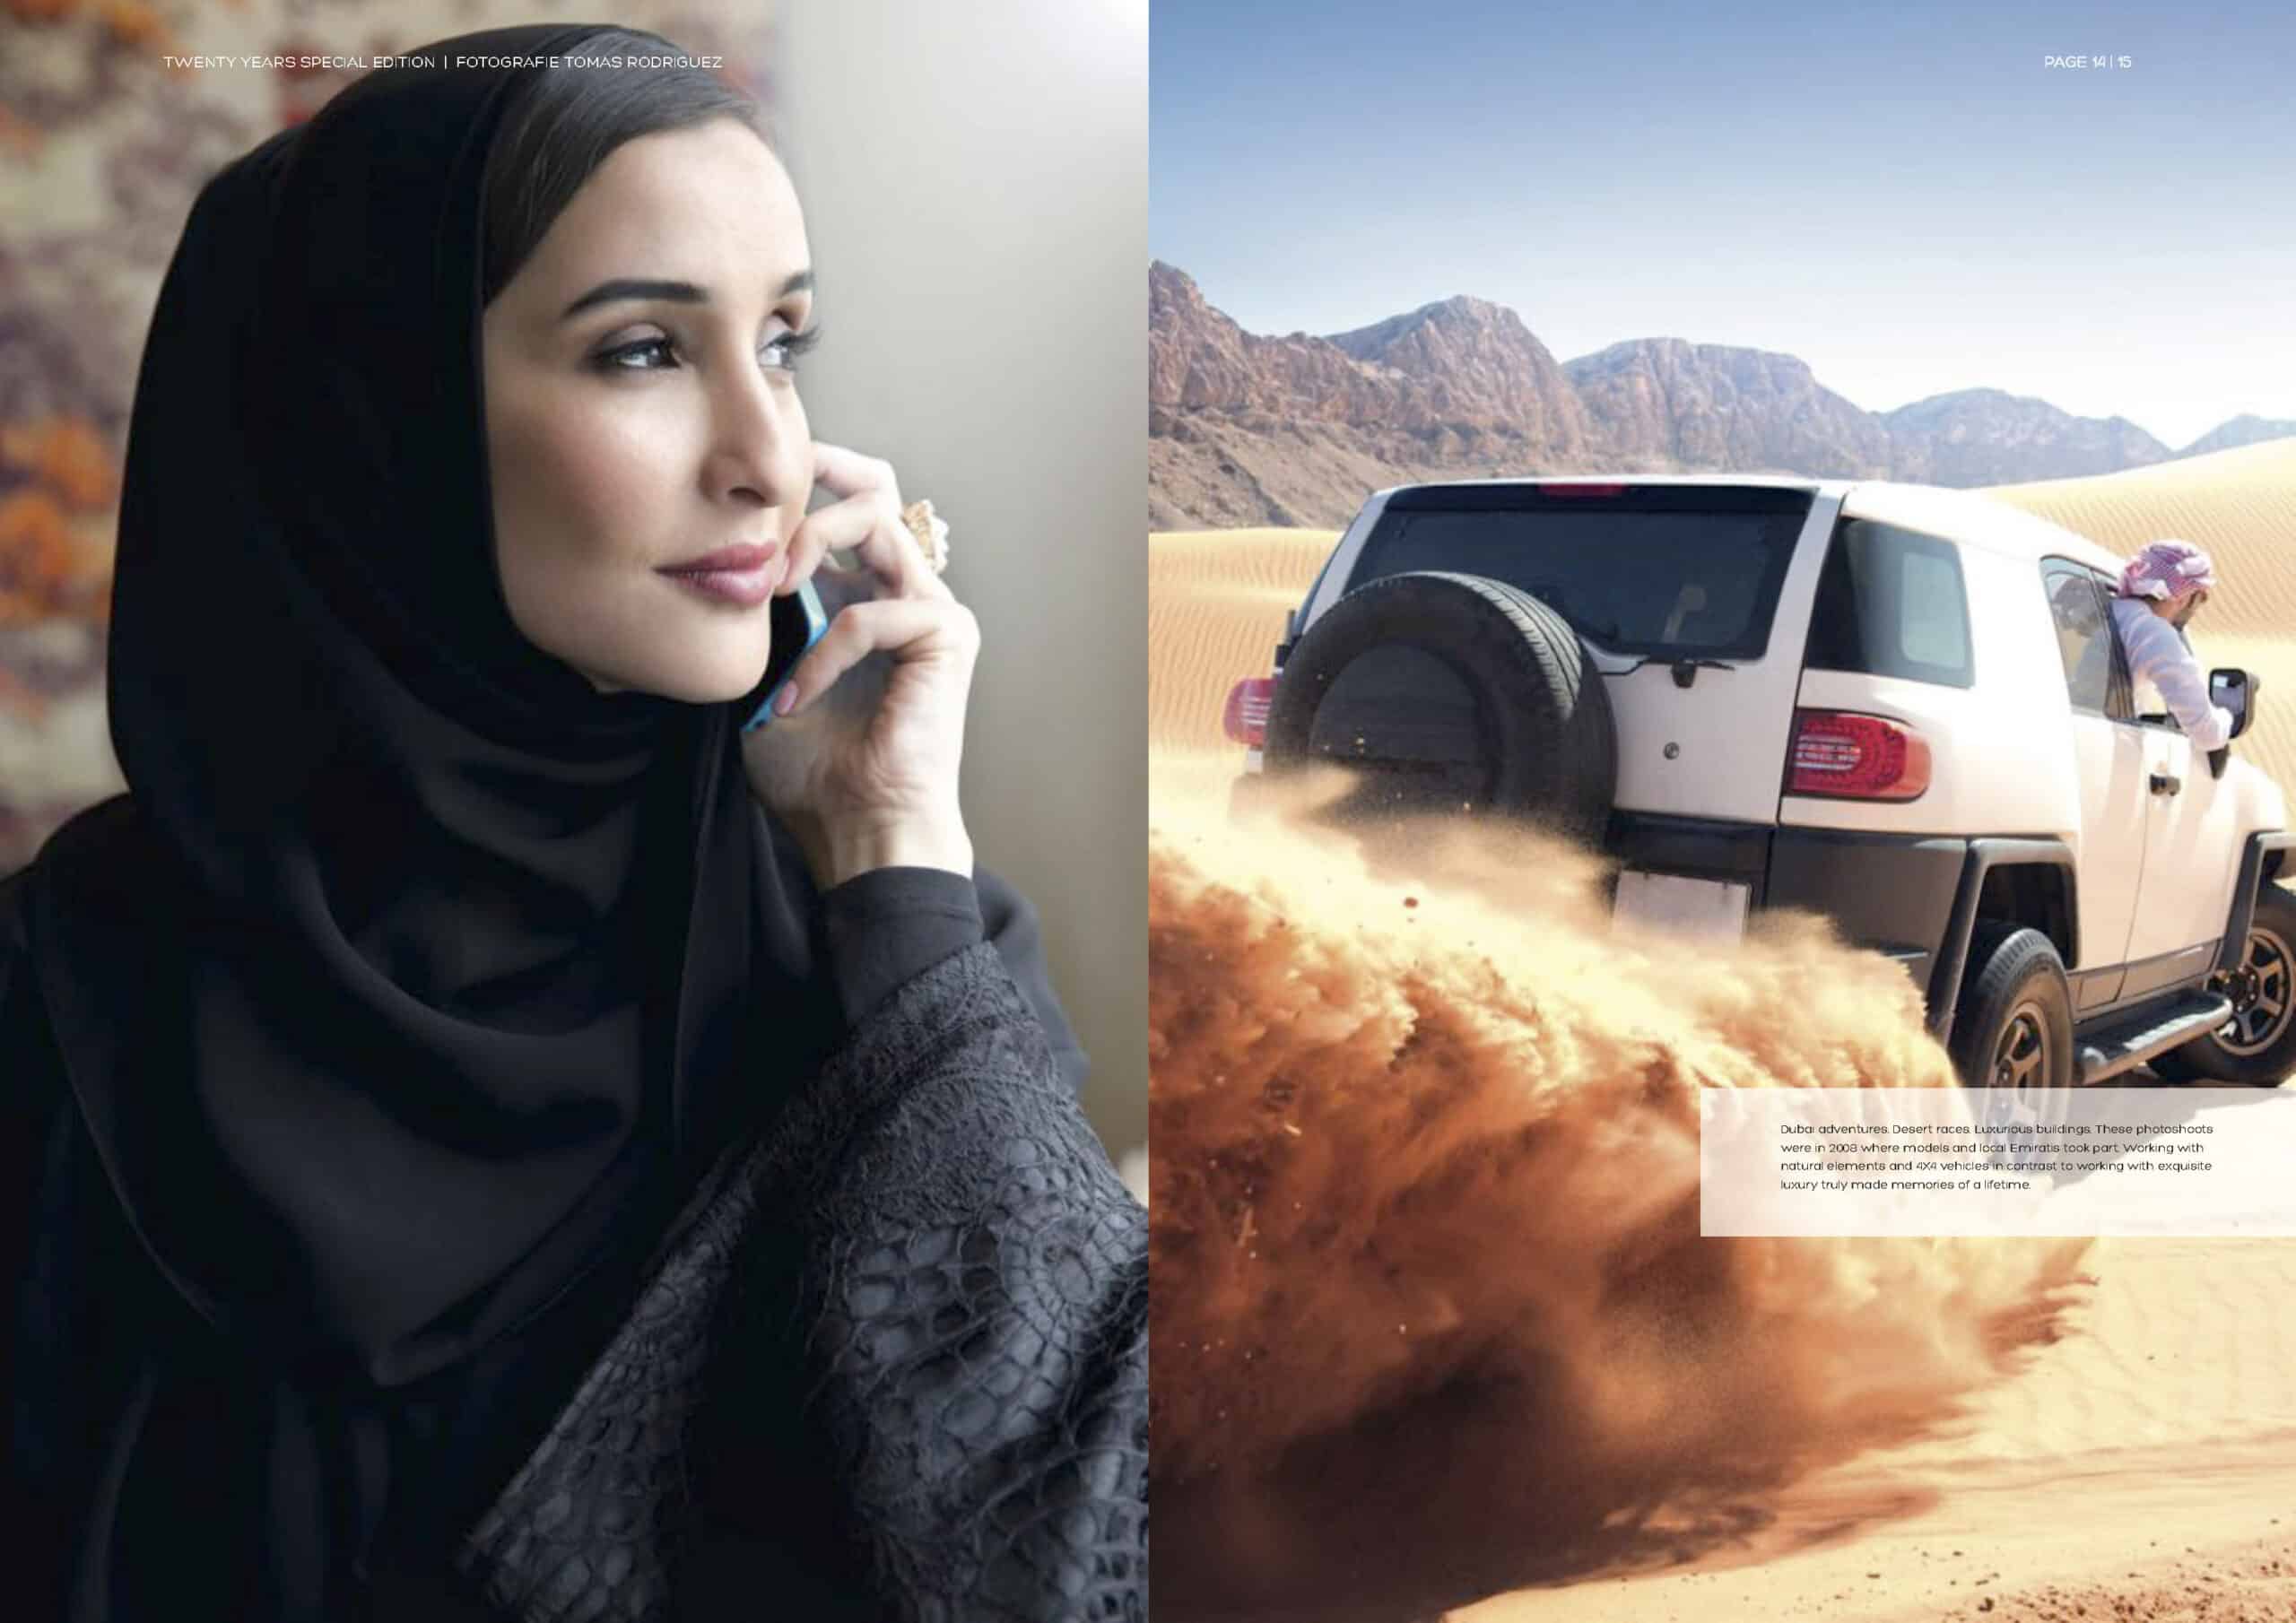 Eine Frau mit Hijab telefoniert nachdenklich mit ihrem Handy. Gegenüber rast ein Geländewagen durch die Wüste und wirbelt eine Sandspur auf. © Fotografie Tomas Rodriguez